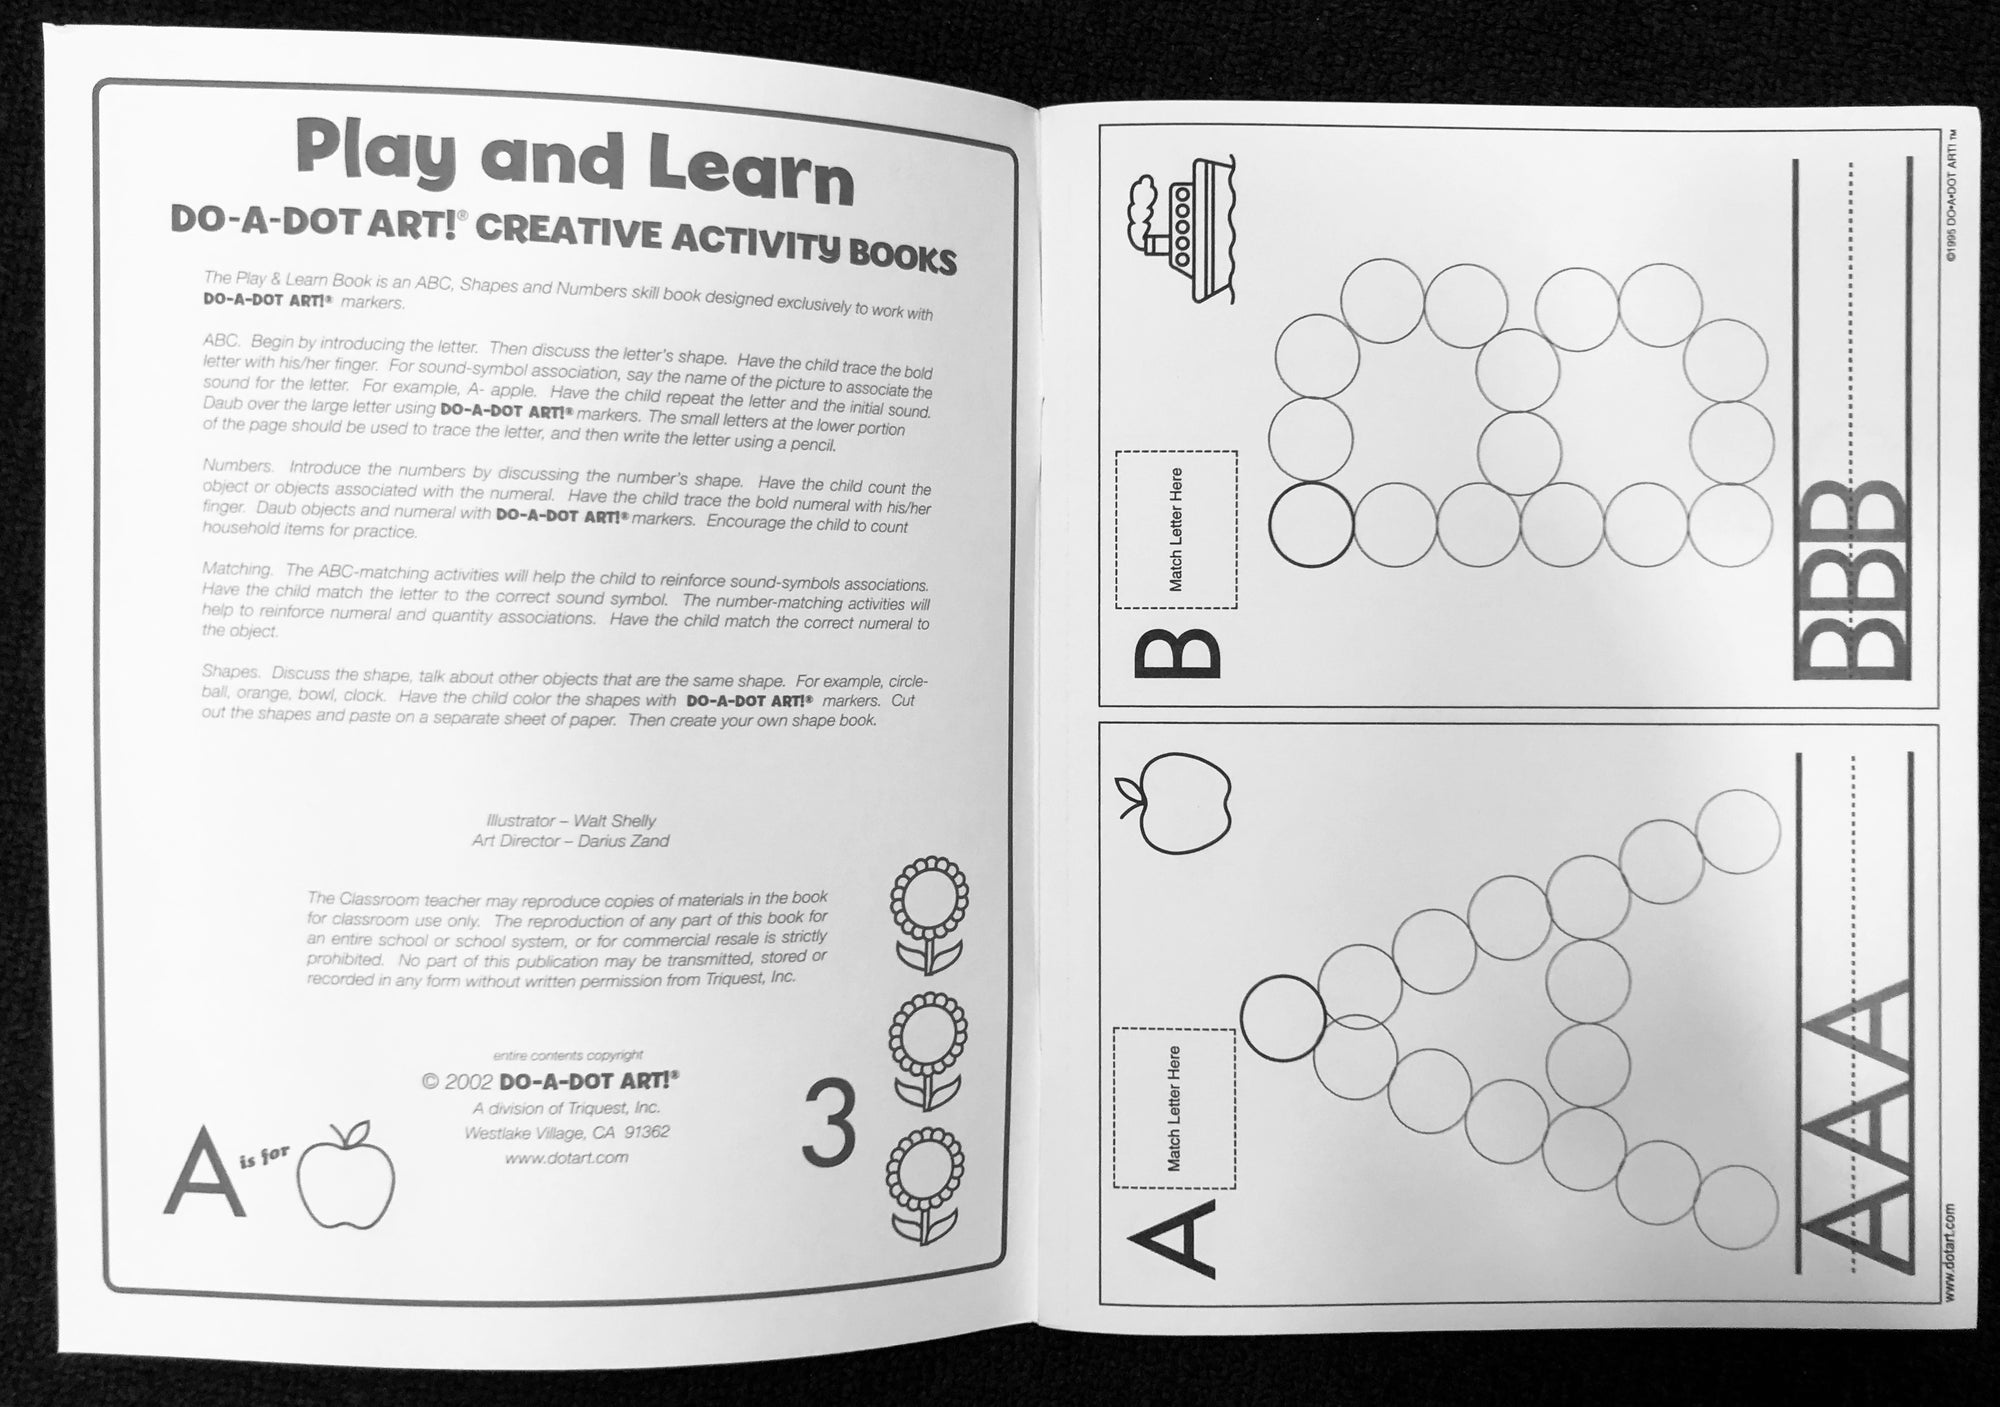 Do-A-Dot Art Creative Activity Book: Play & Learn ABC